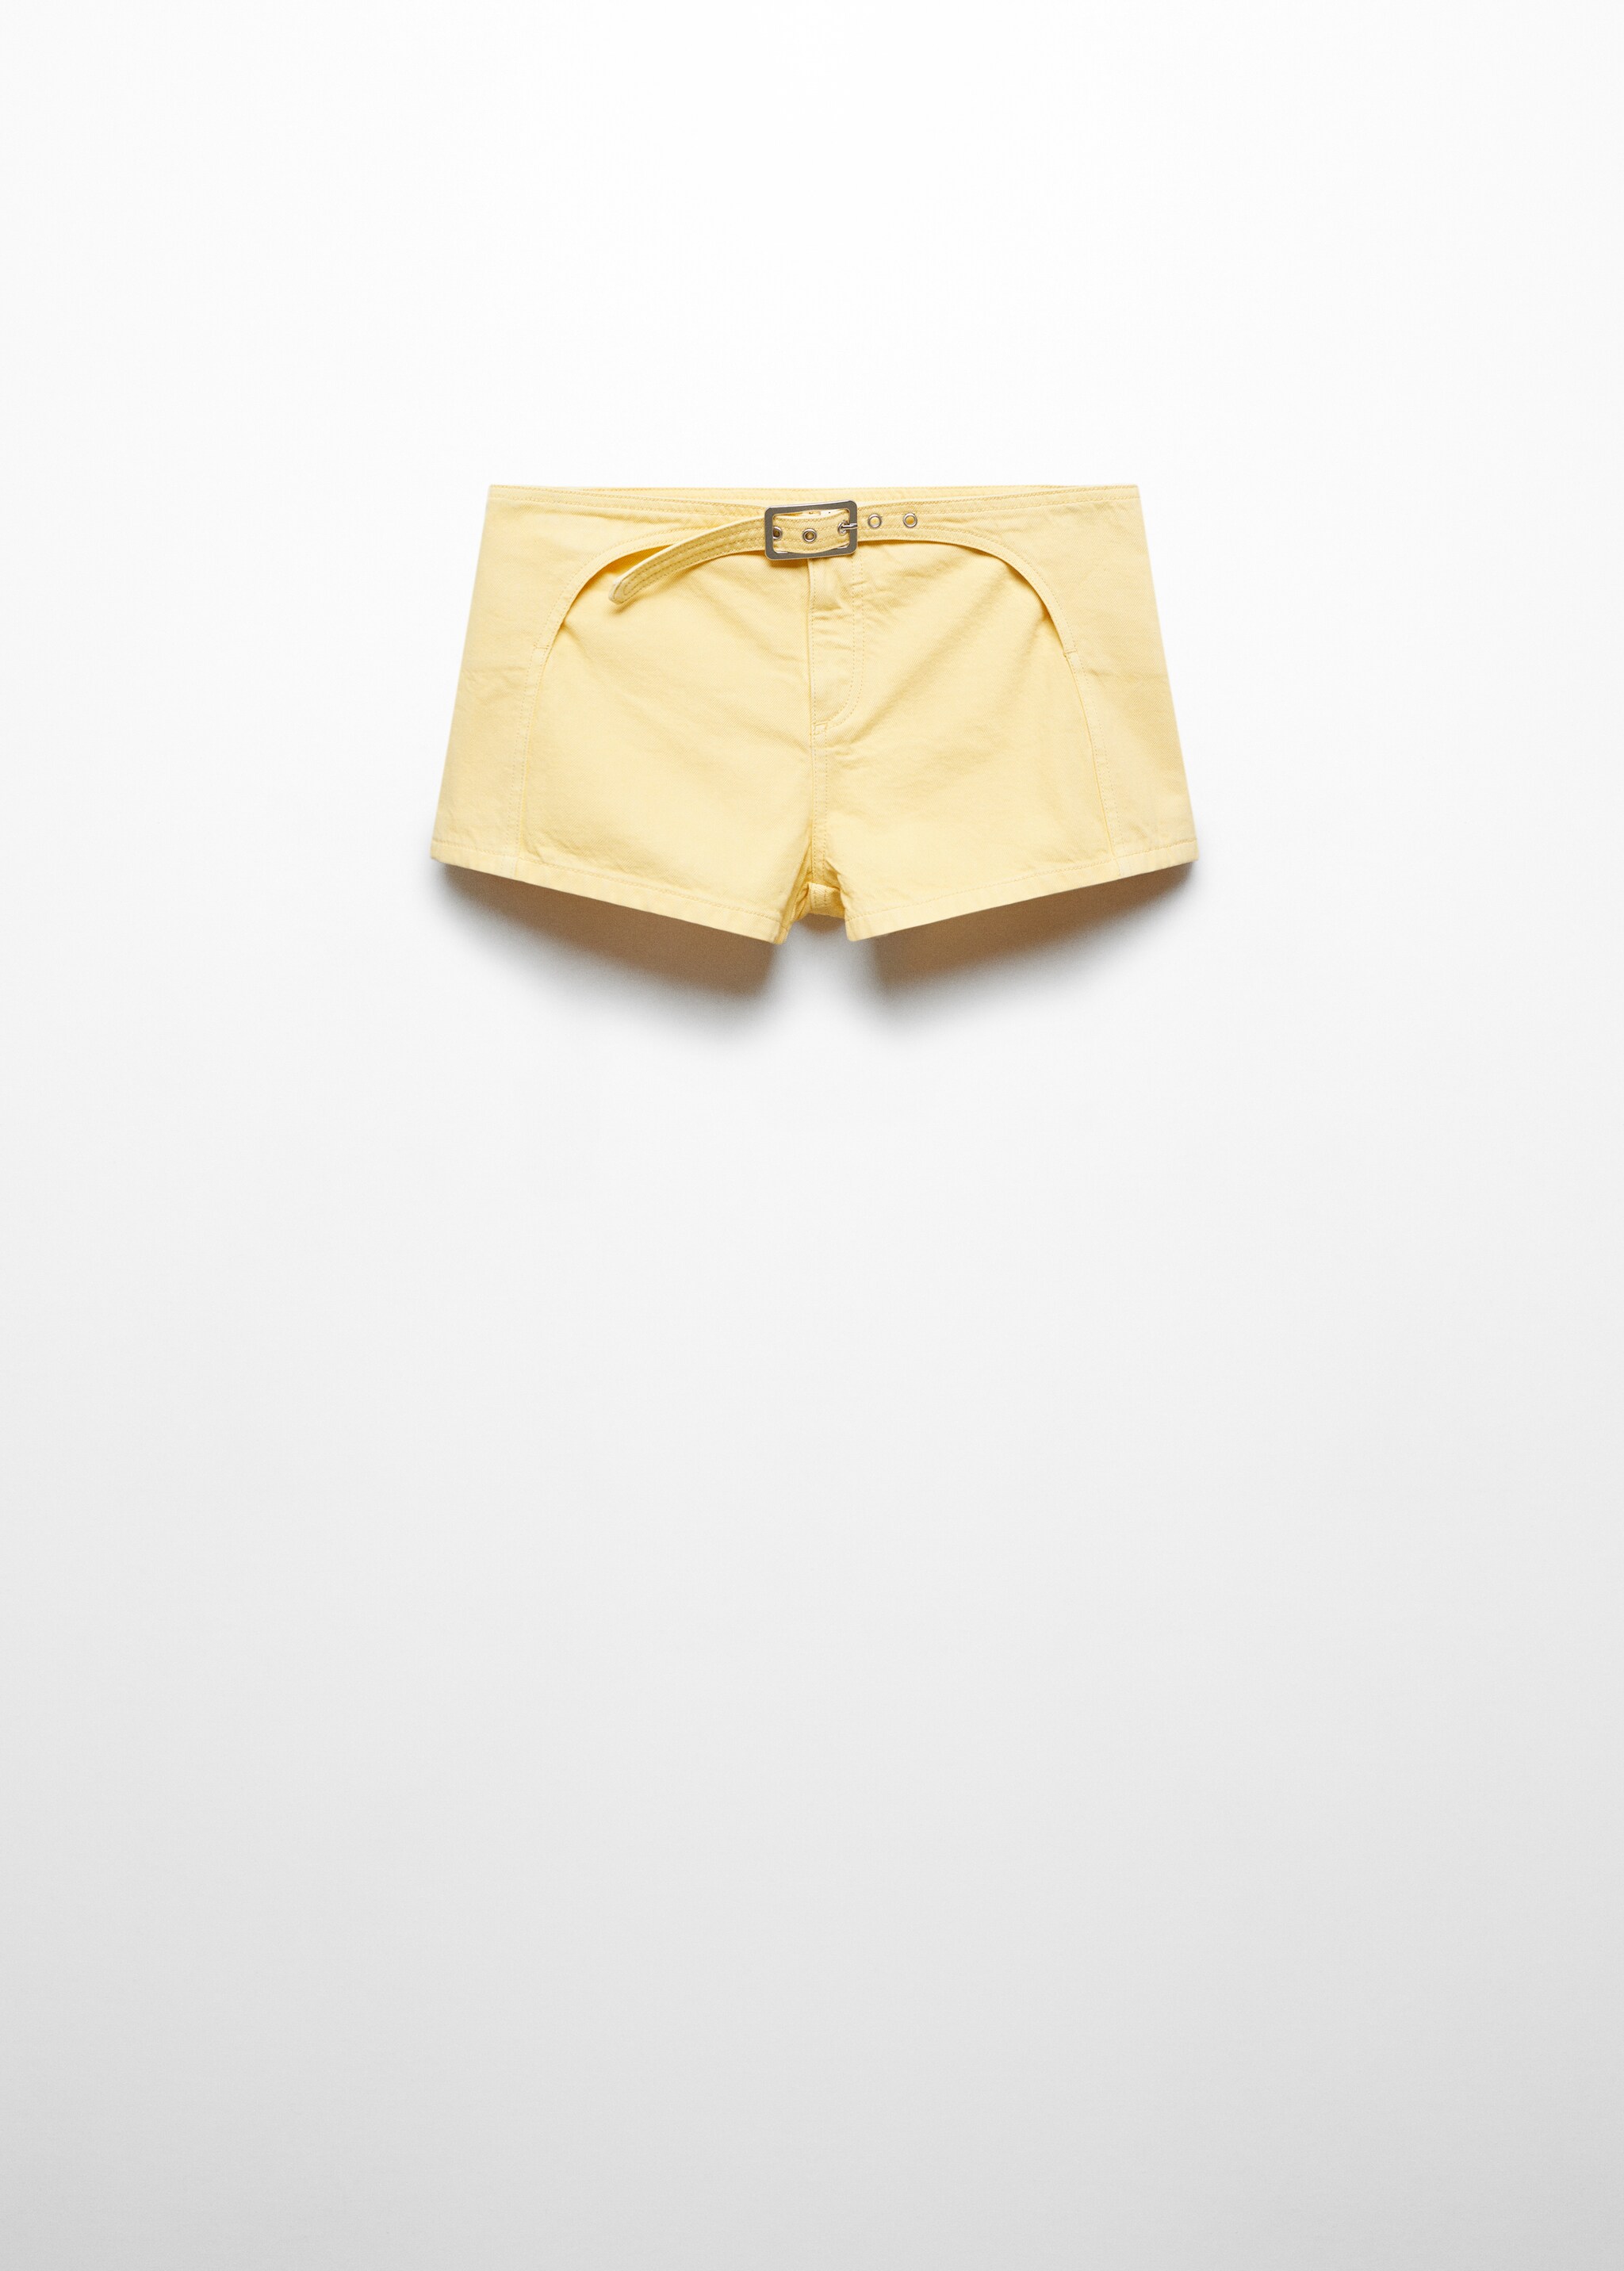 شورت جينز مع حزام - منتج دون نموذج